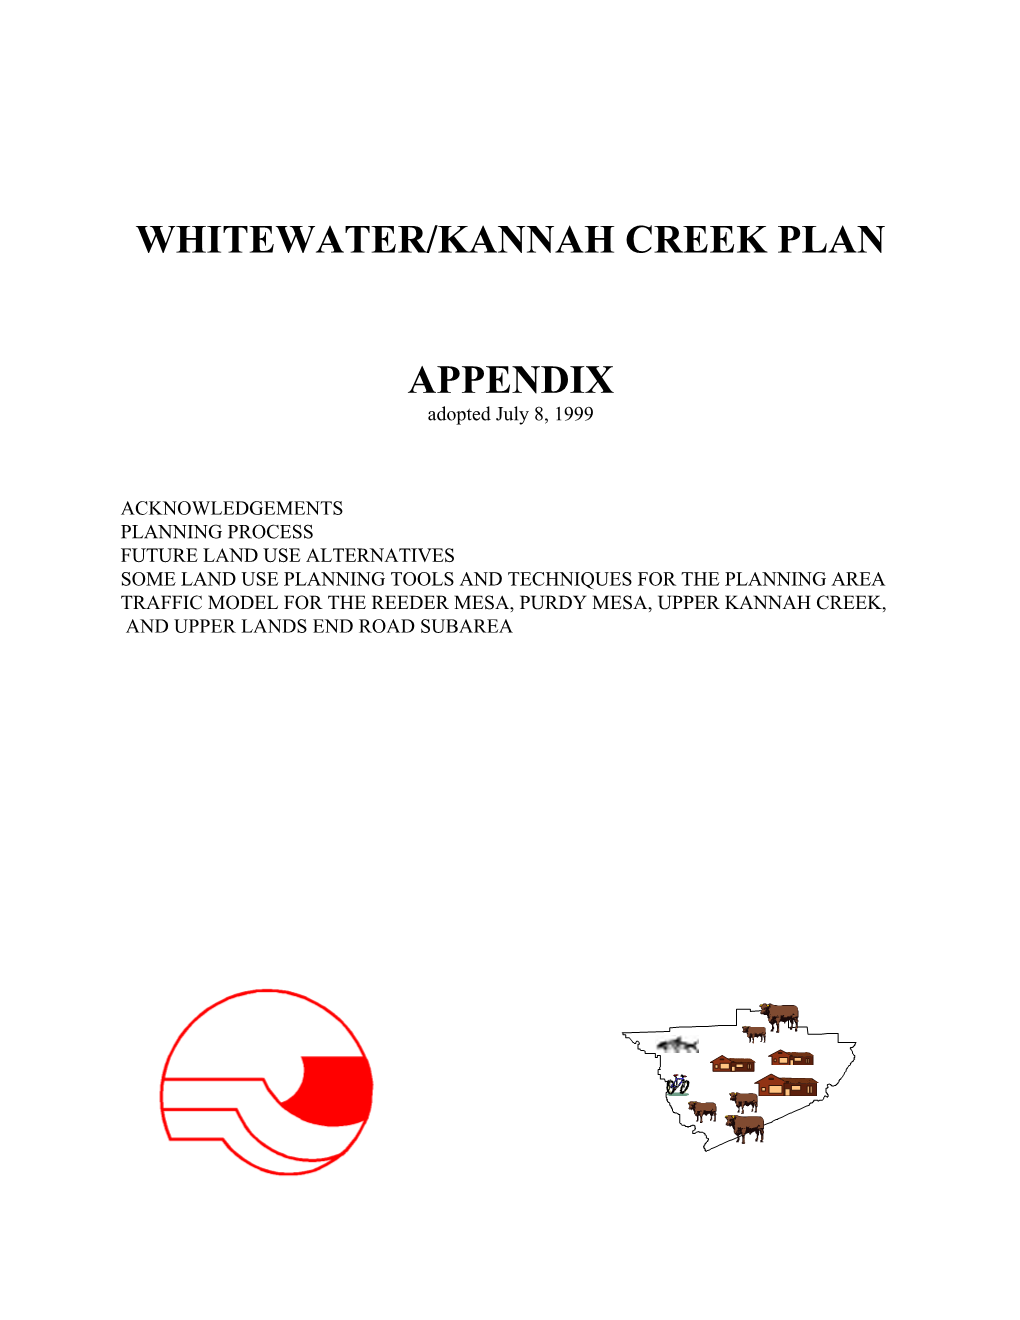 Whitewater/Kannah Creek Plan Appendix